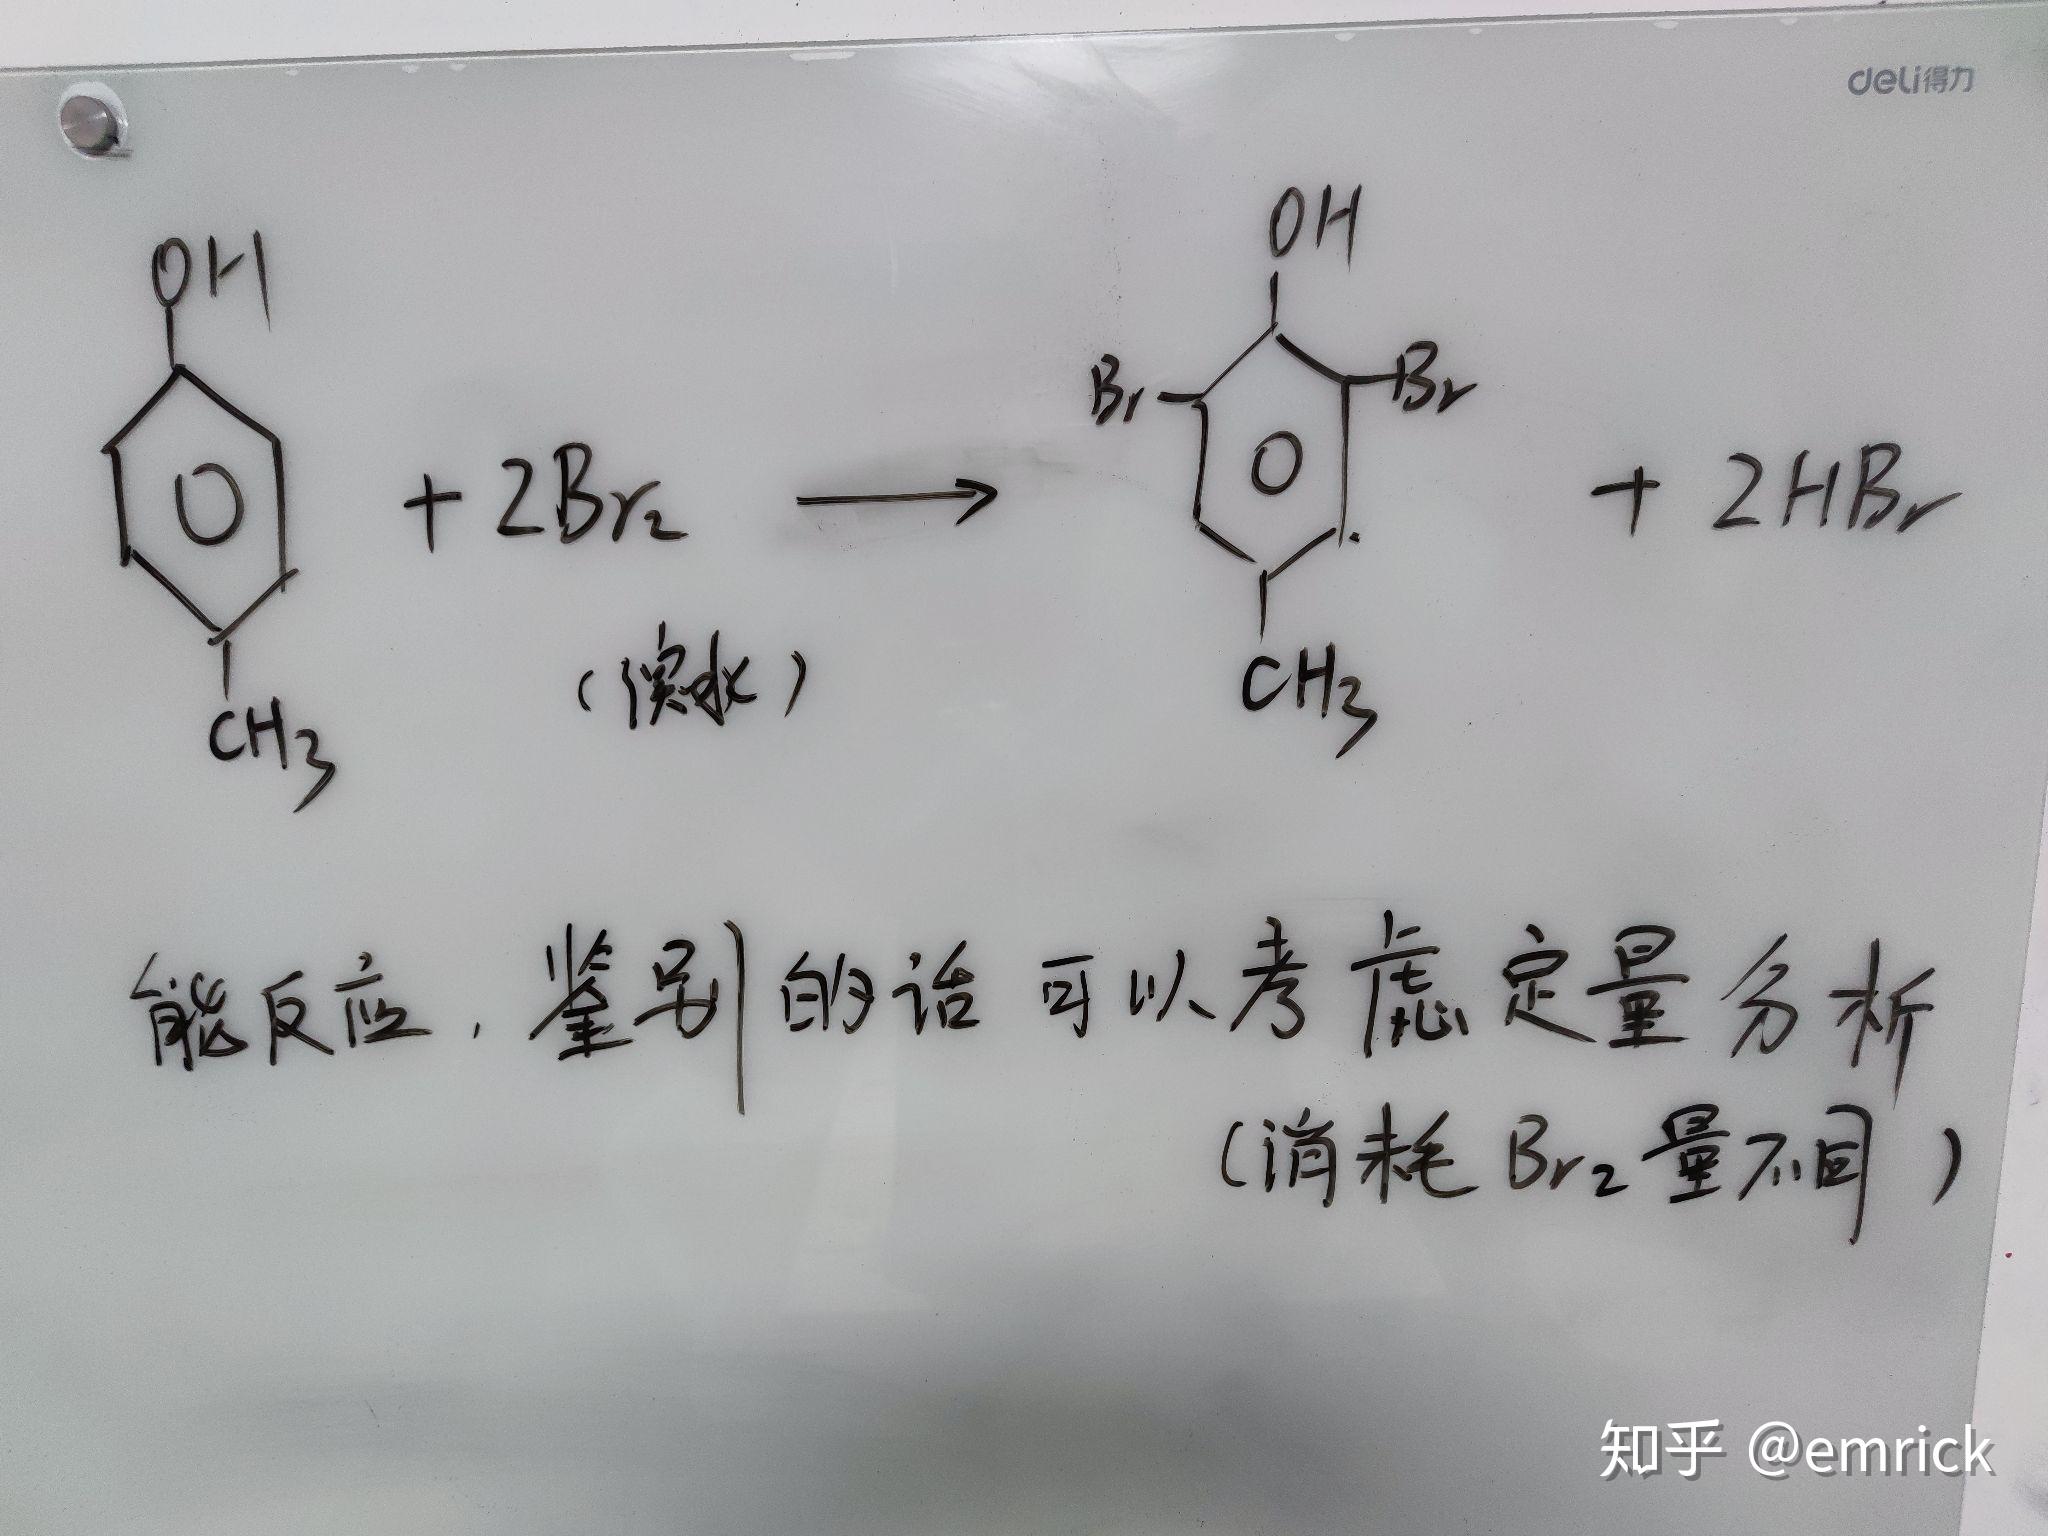 对甲基苯酚与溴水反应能产生沉淀吗?它与苯酚怎么鉴别啊? 